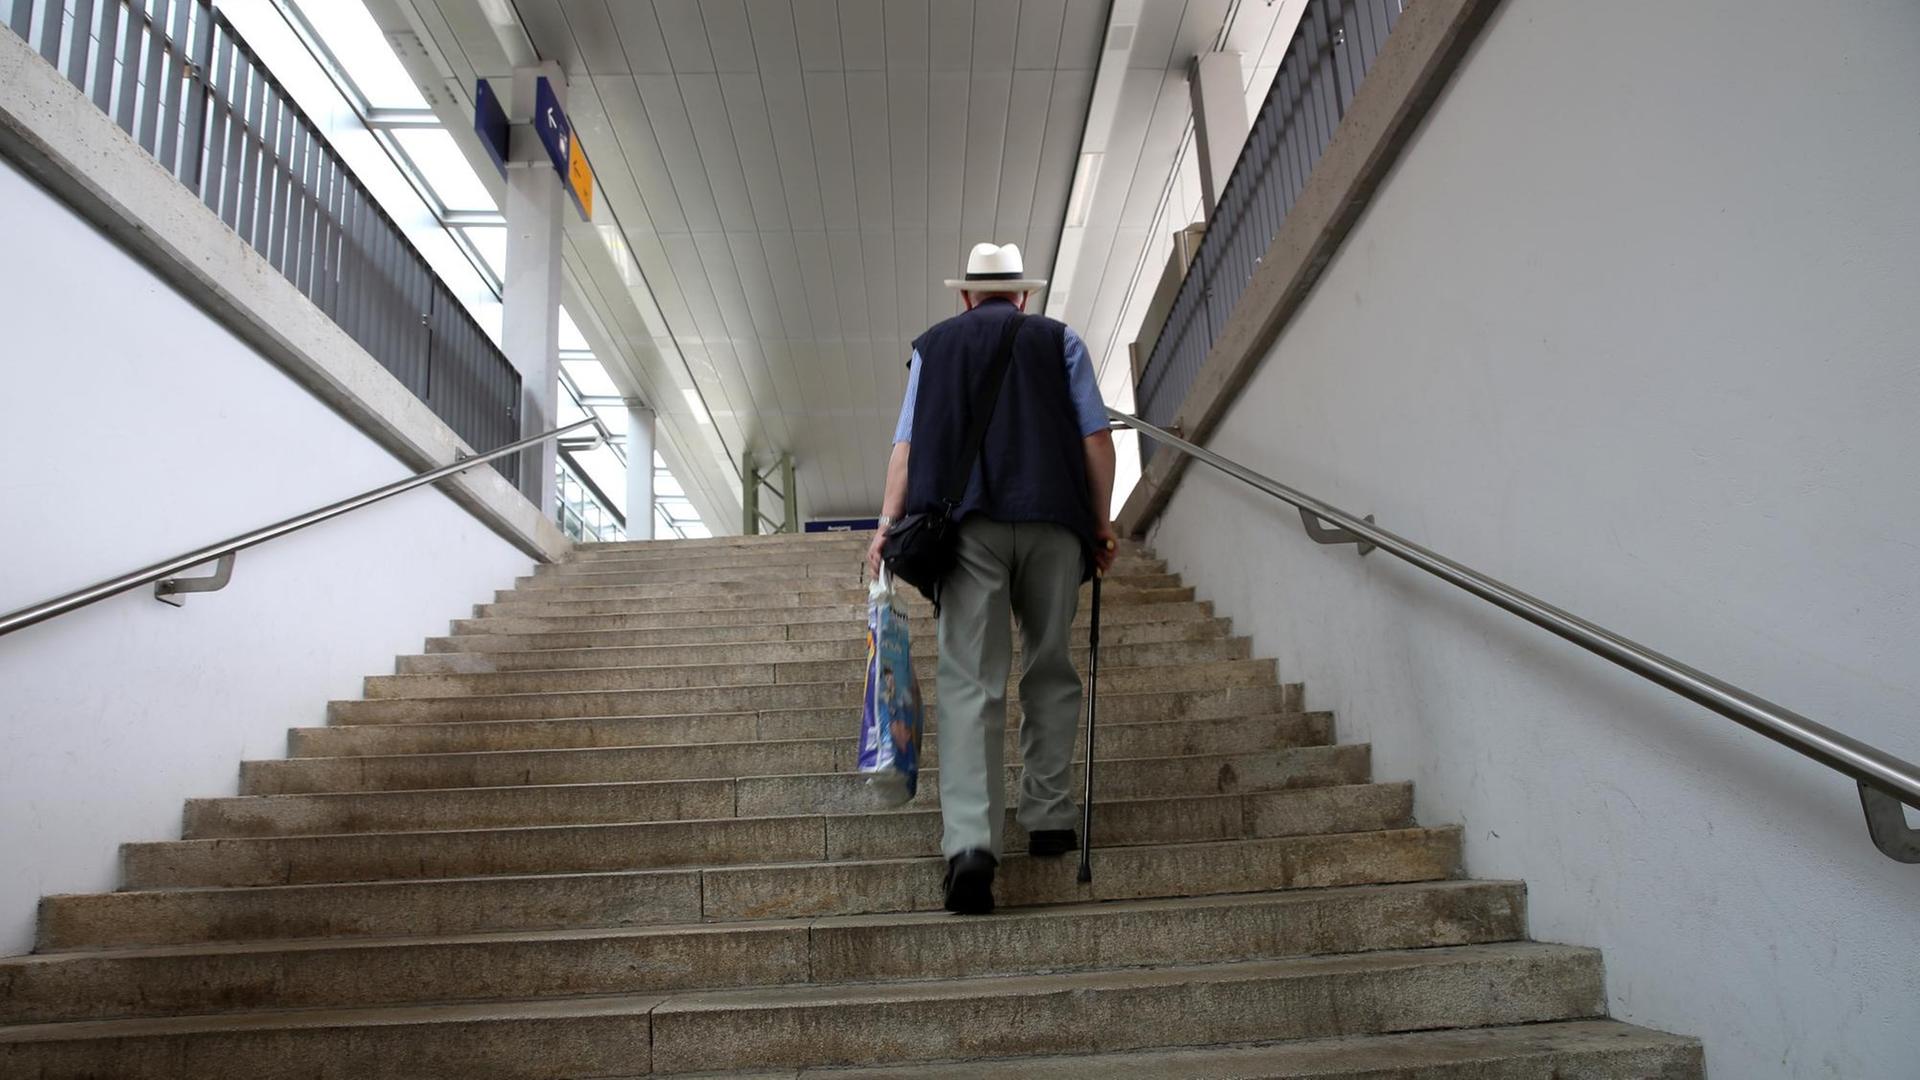 Ein älterer Herr mit Gehstock trägt eine Plastiktüte und steigt eine Treppe hoch.